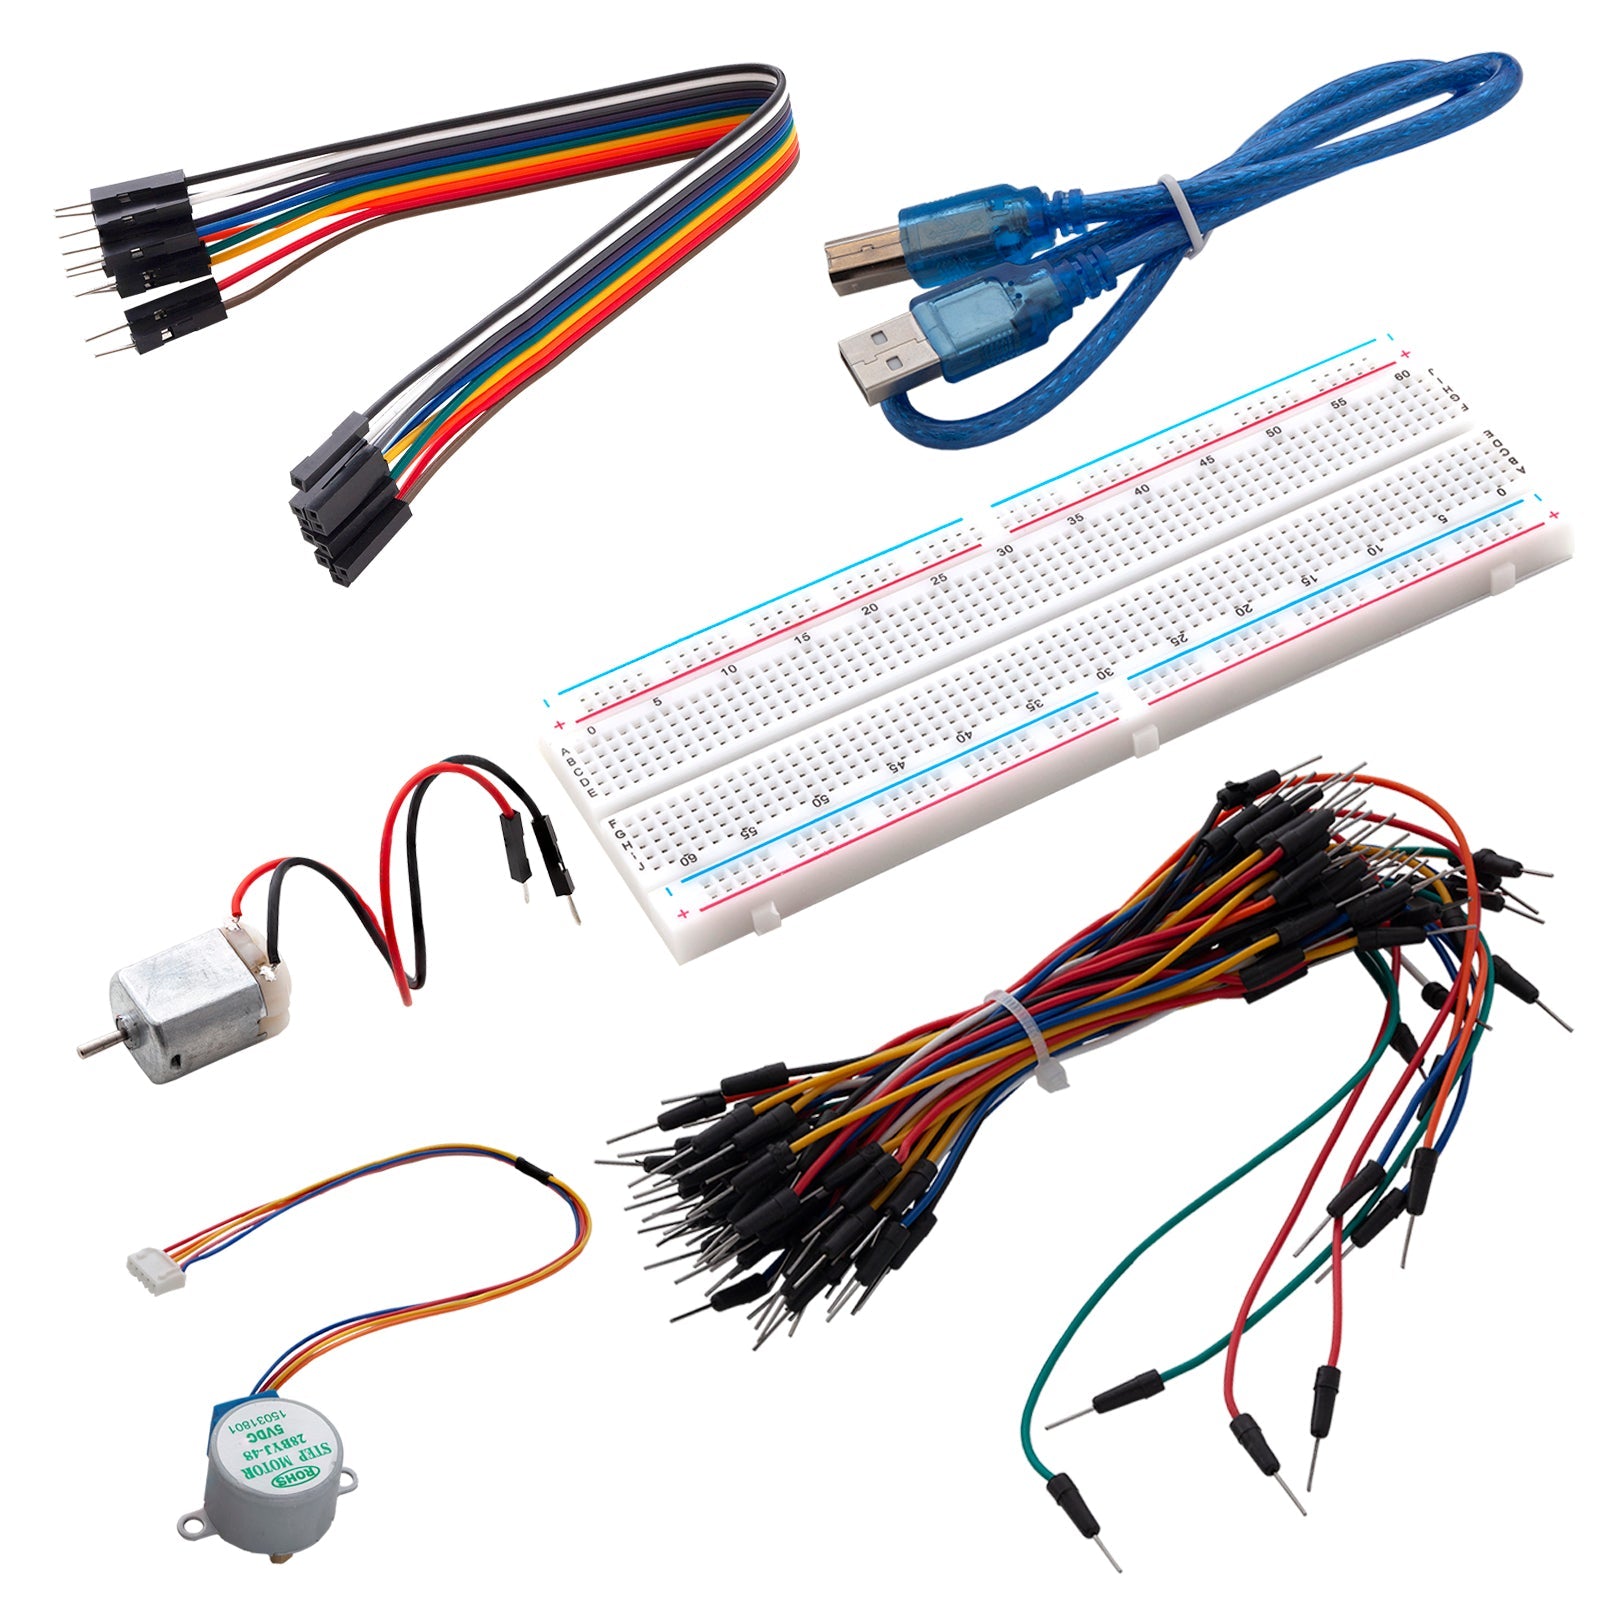 Kit de démarrage électronique Kit de microcontrôleur, module d